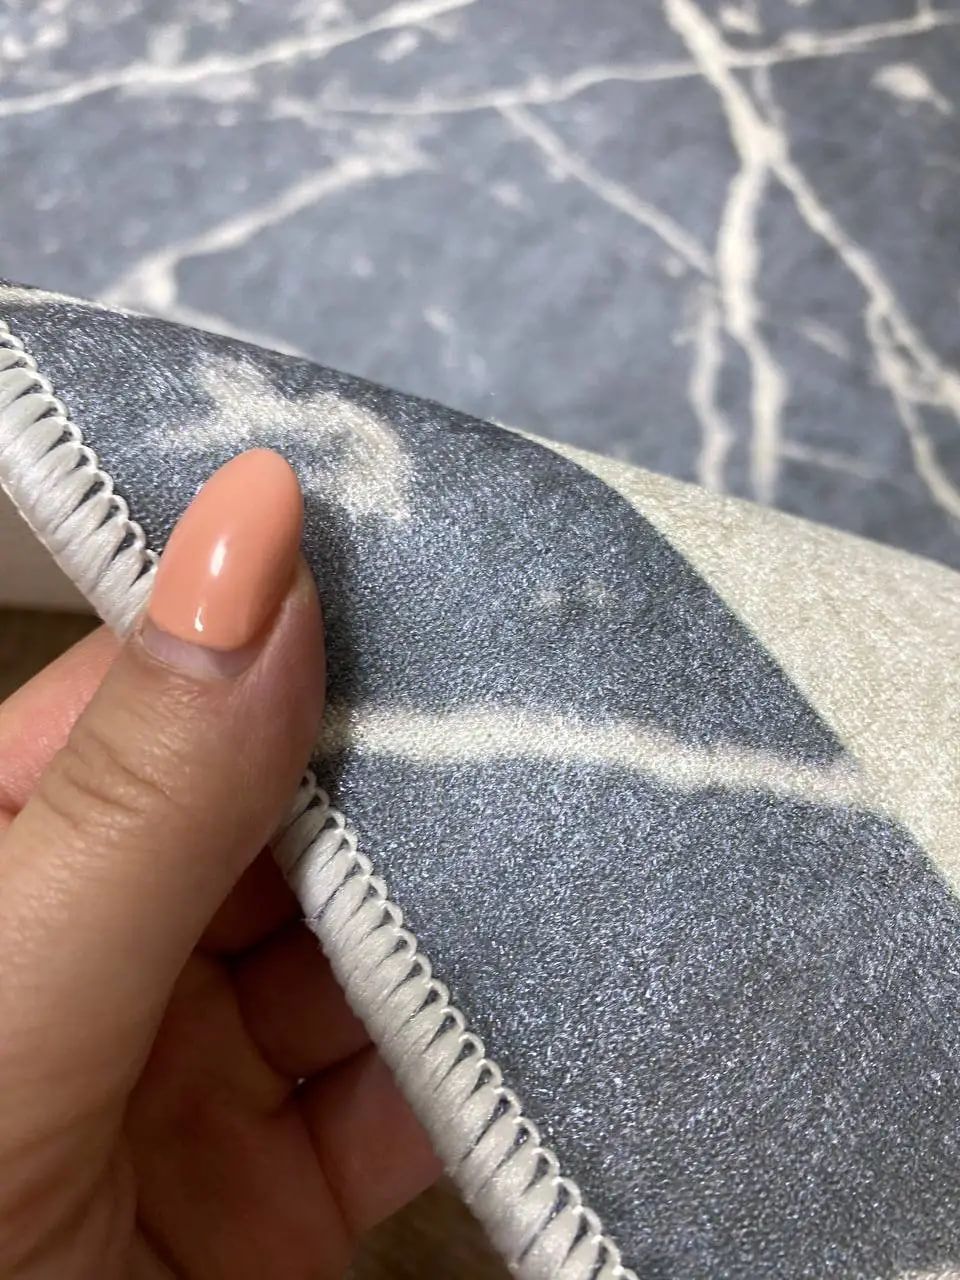 Турецький безворсовий килим "Маві" на підкладці з еко-шкіри